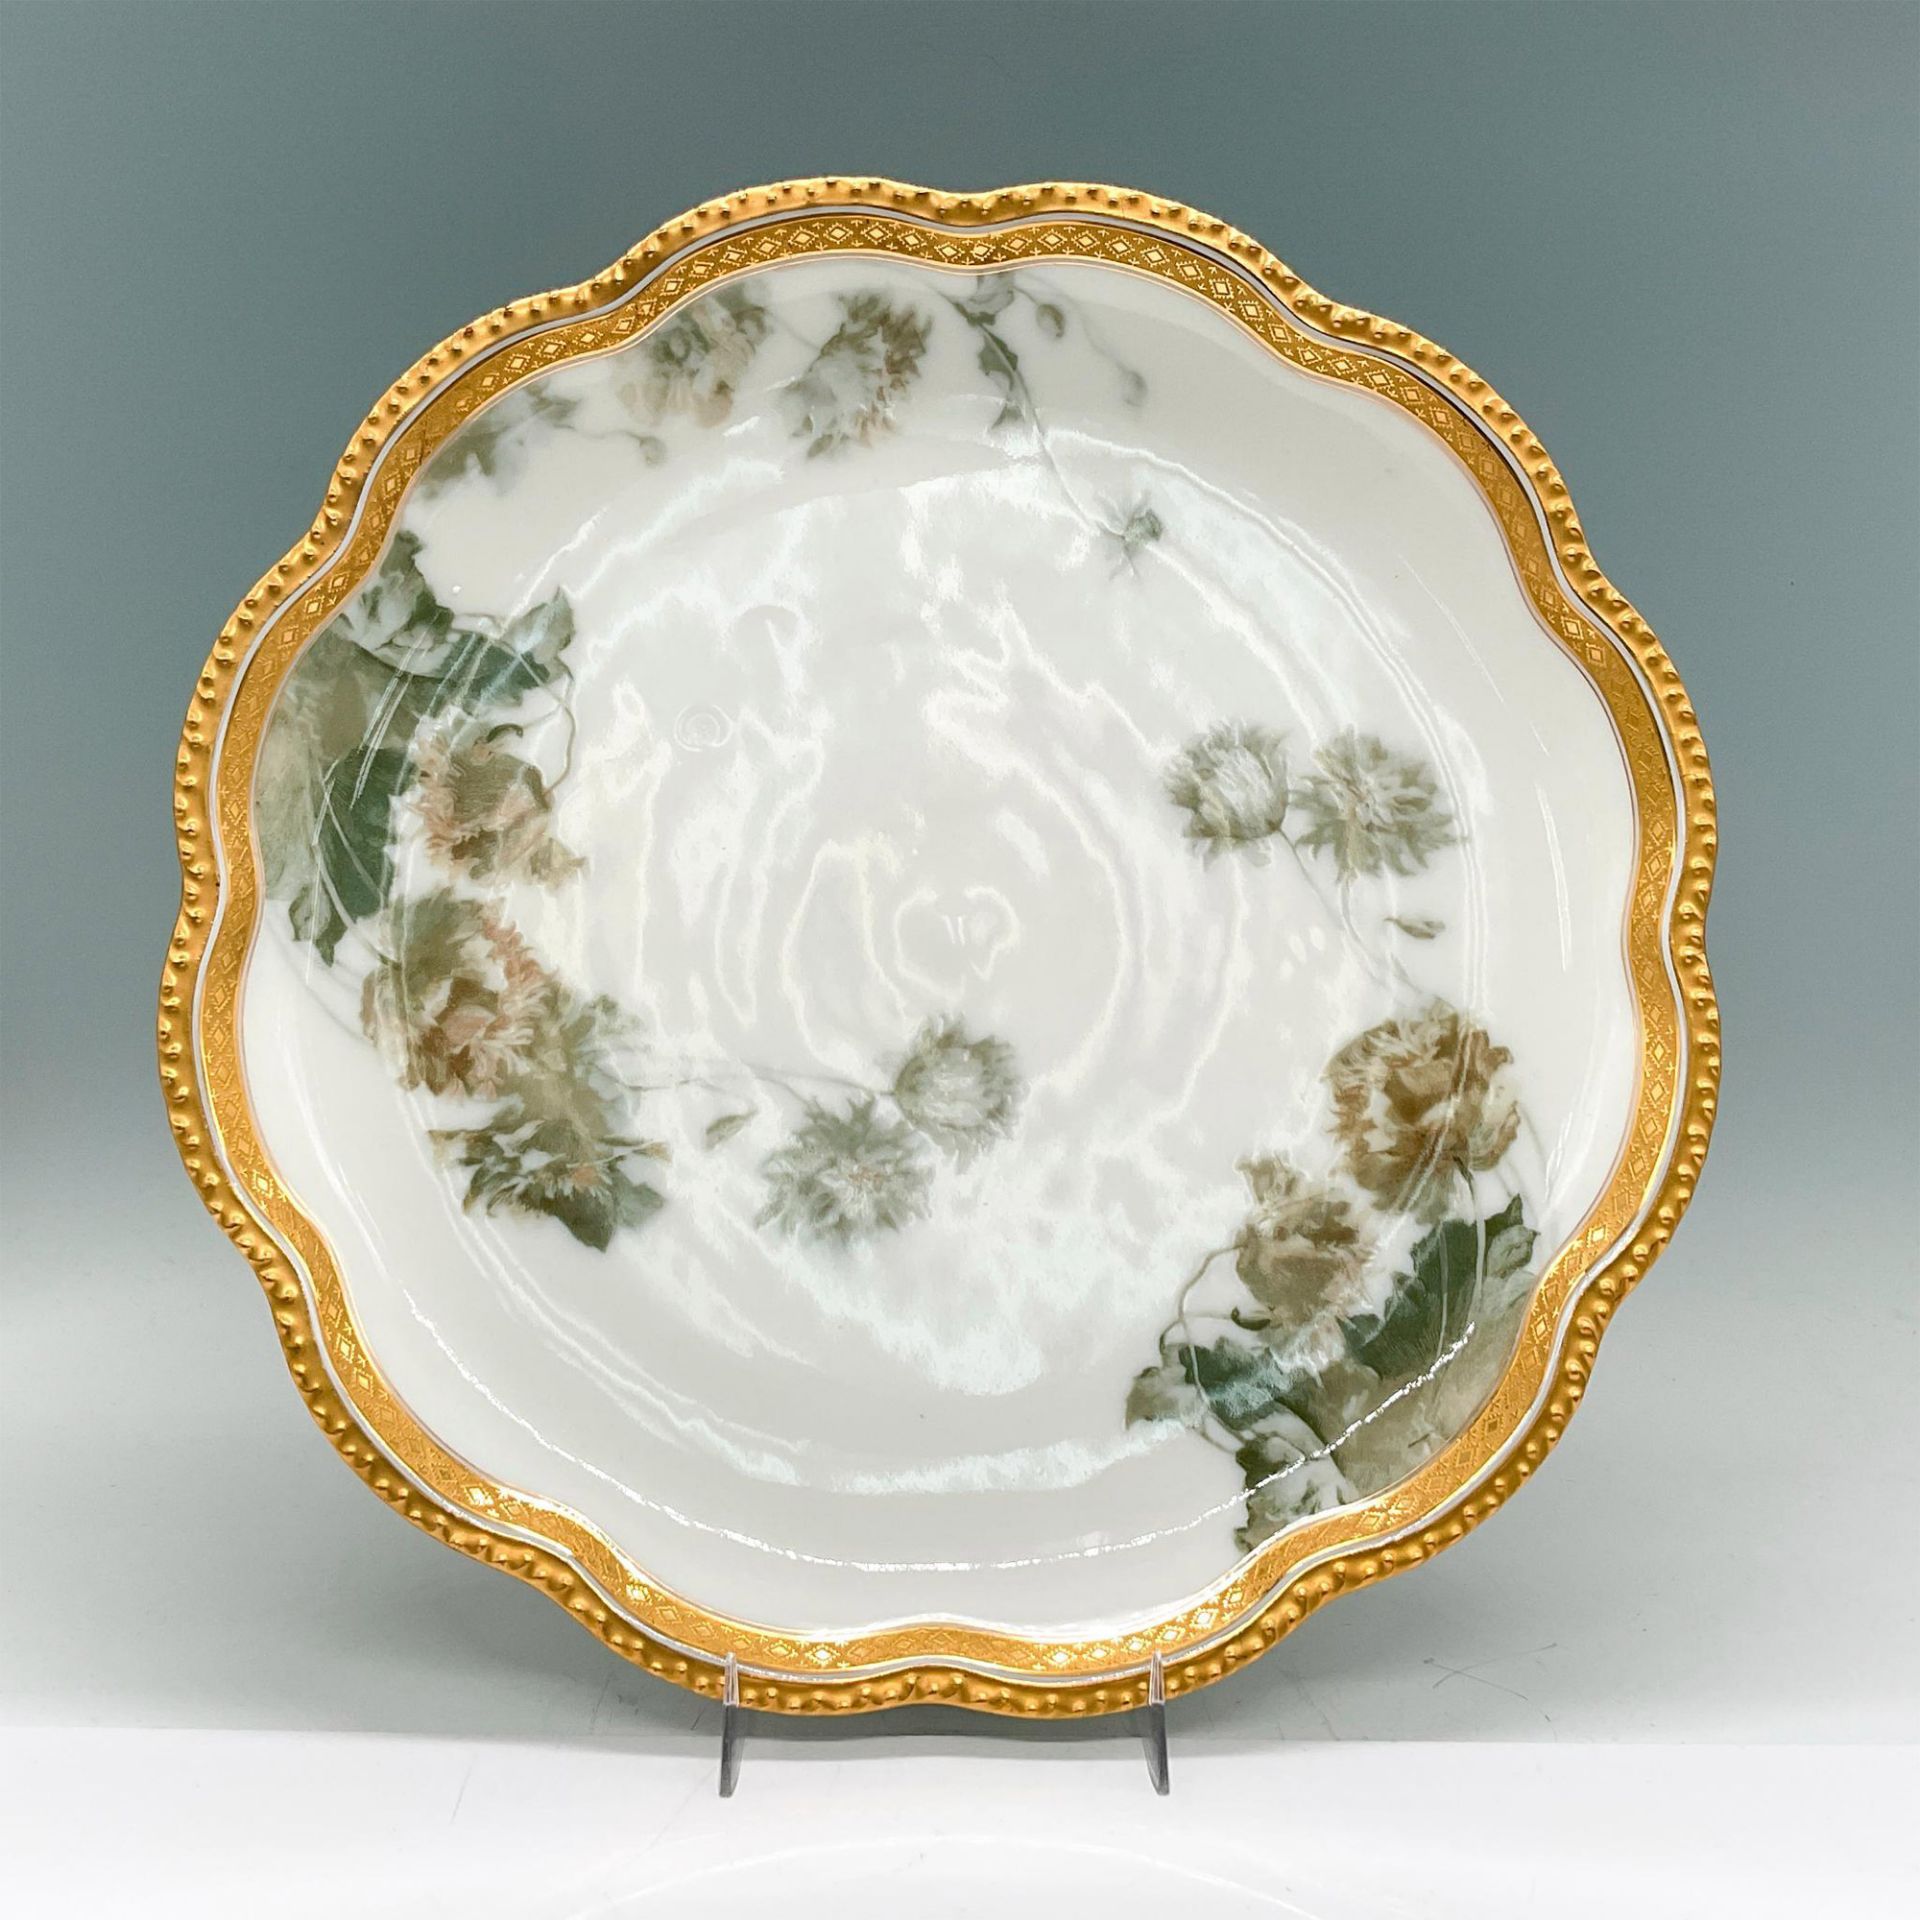 2pc Haviland & Co. Decorative Limoges Plates, Dandelions - Image 2 of 6